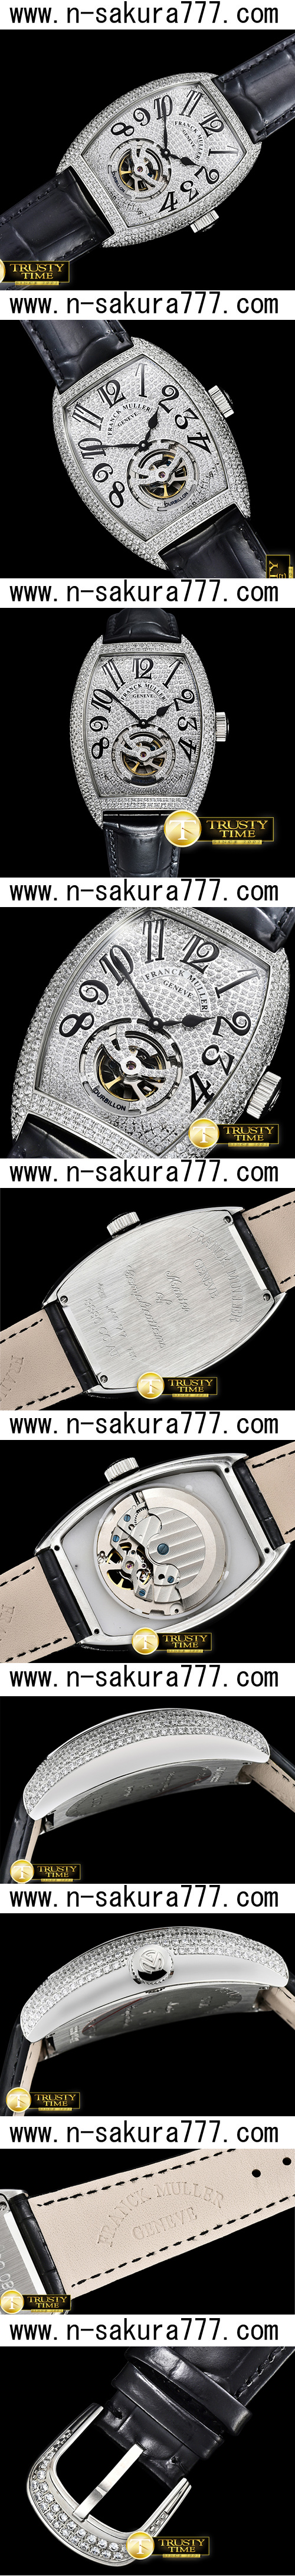 スーパーコピー時計フランク・ミュラー ブラック・クロコ21600振動 (自動巻き) - ウインドウを閉じる